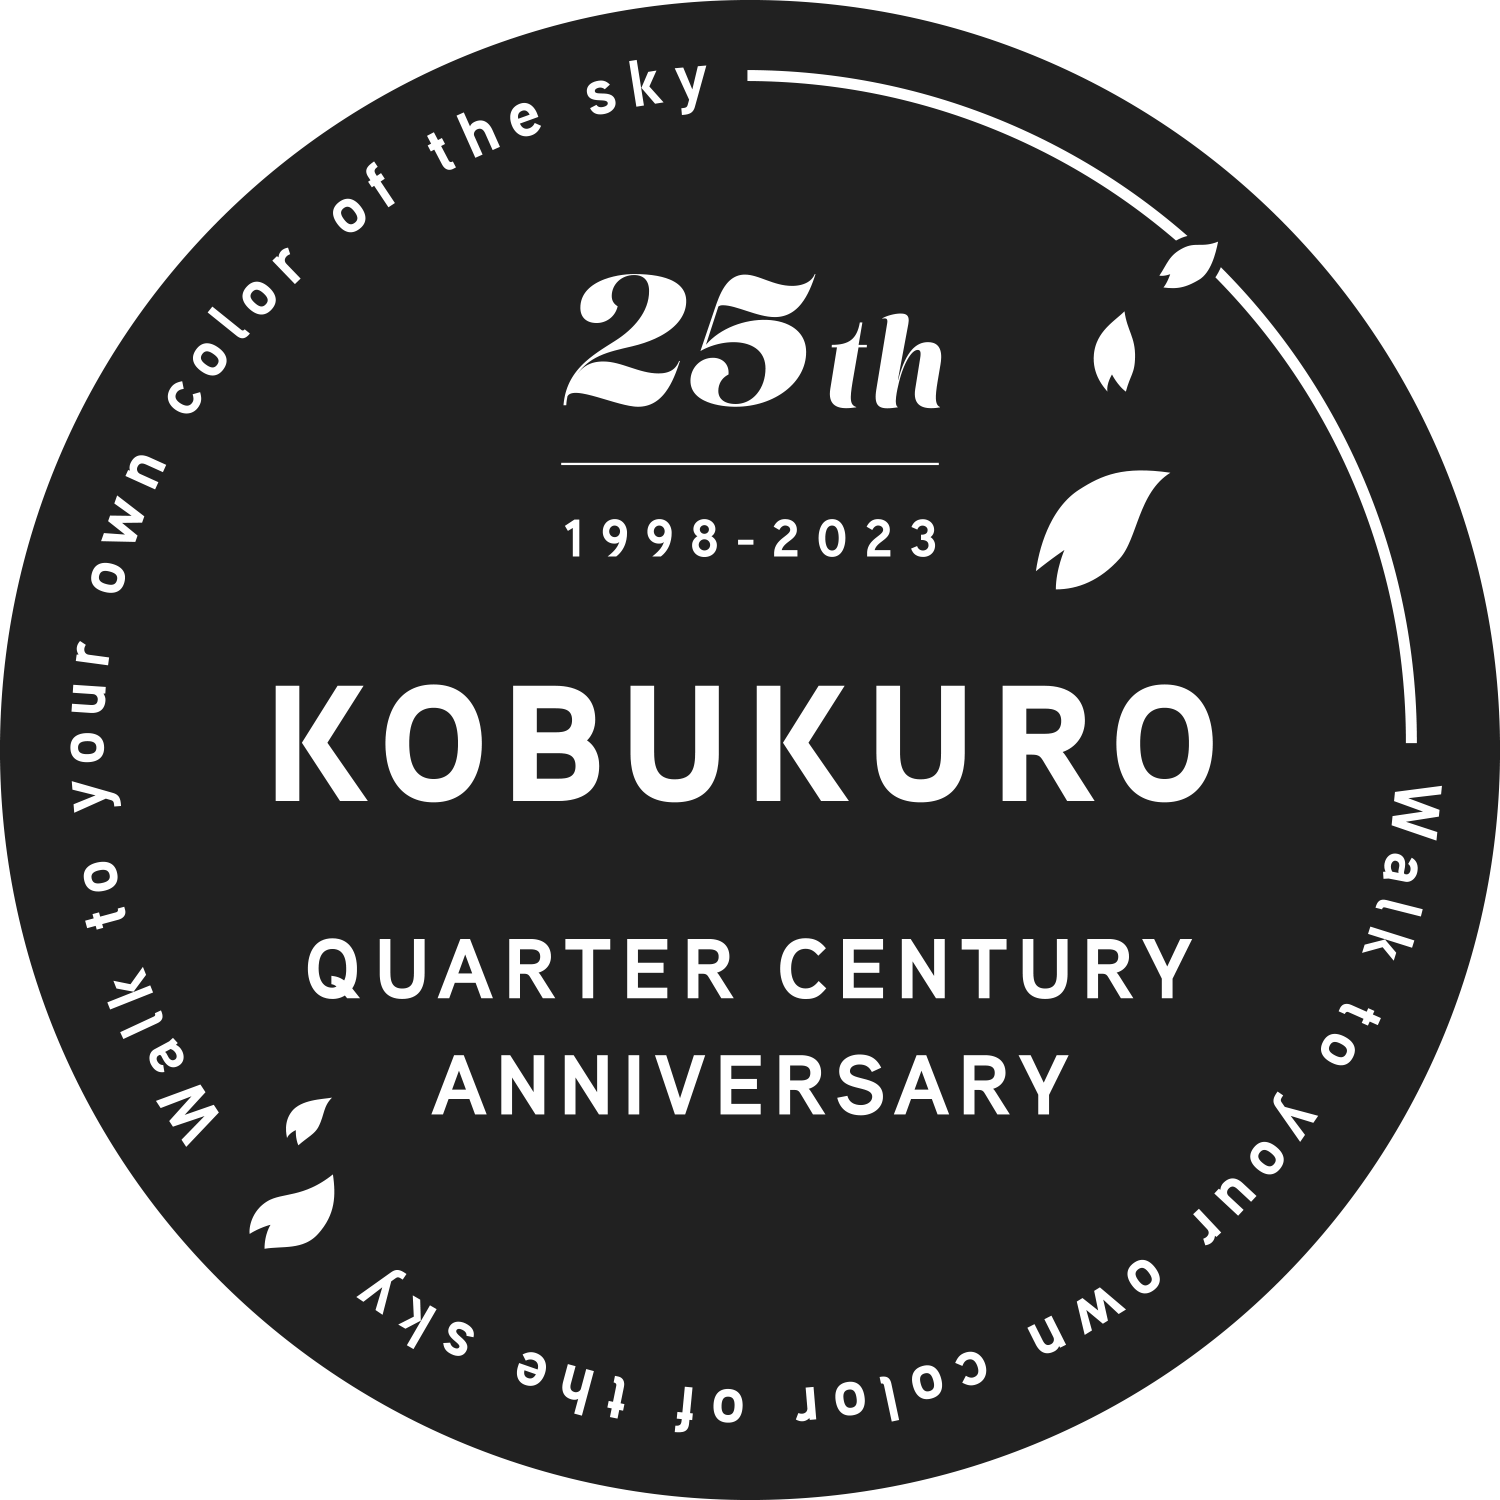 KOBUKURO QUARTER CENTURY ANNIVERSARY